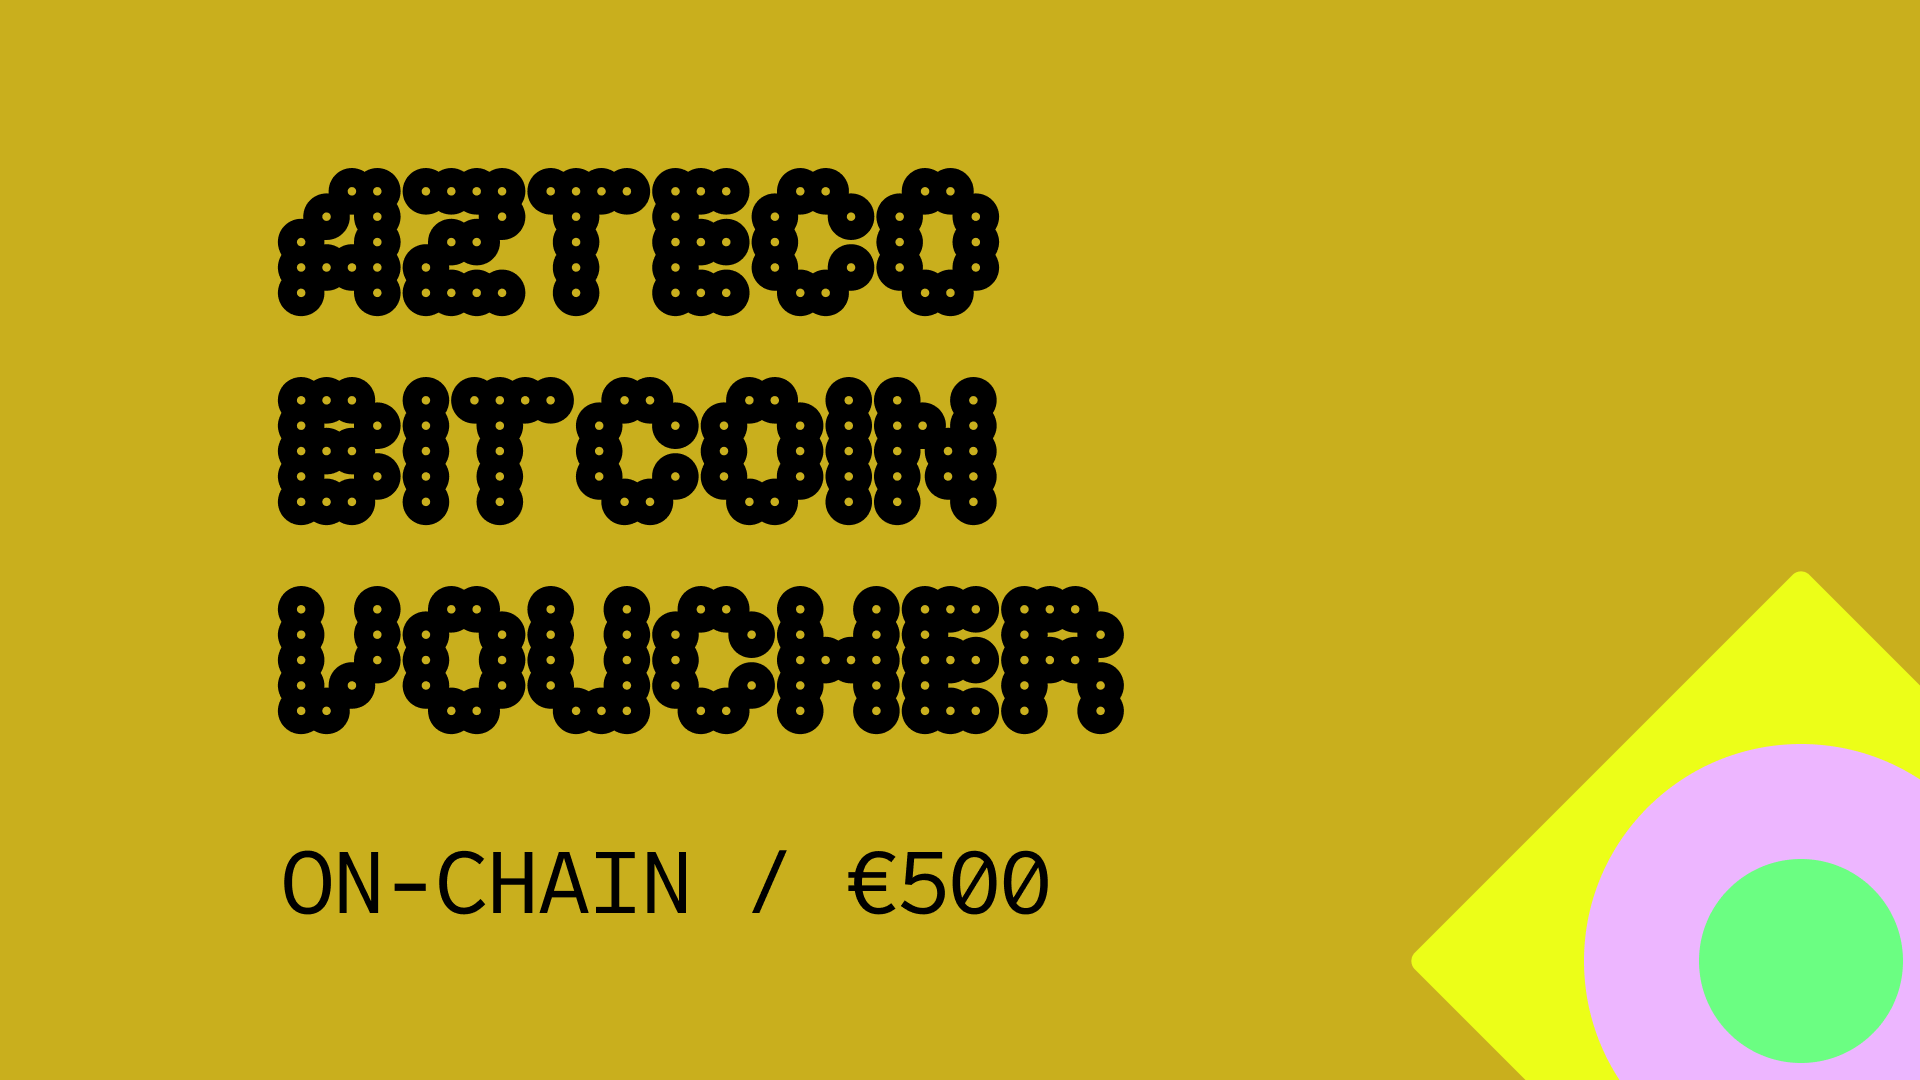 (564.98$) Azteco Bitcoin On-Chain €500 Voucher